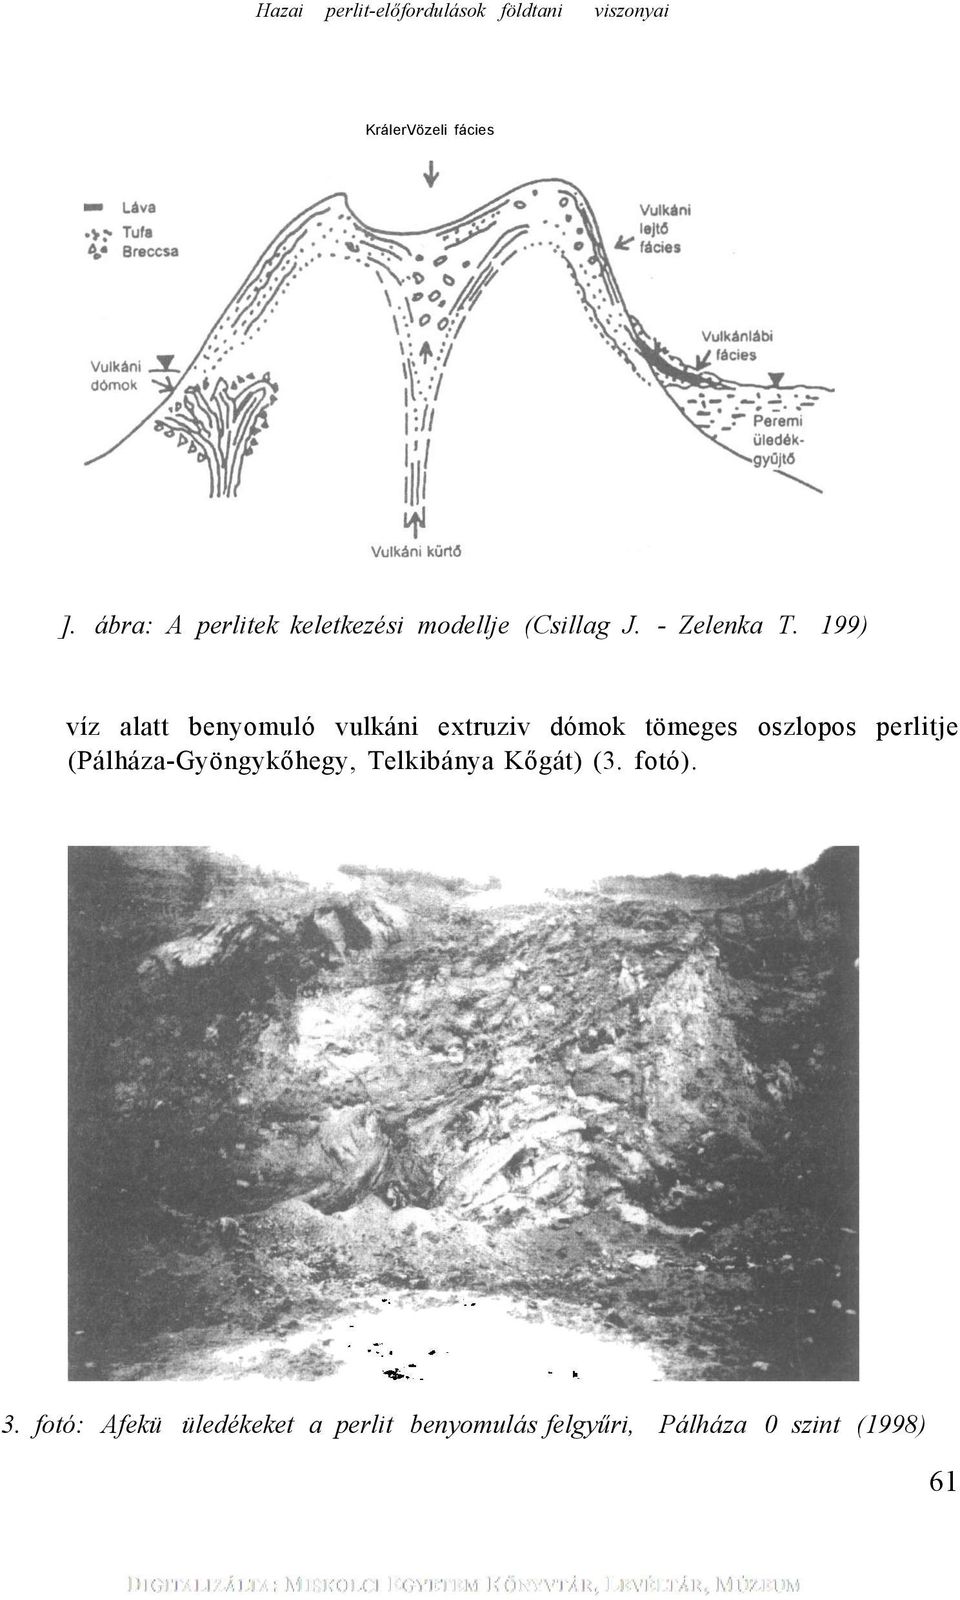 199) víz alatt benyomuló vulkáni extruziv dómok tömeges oszlopos perlitje